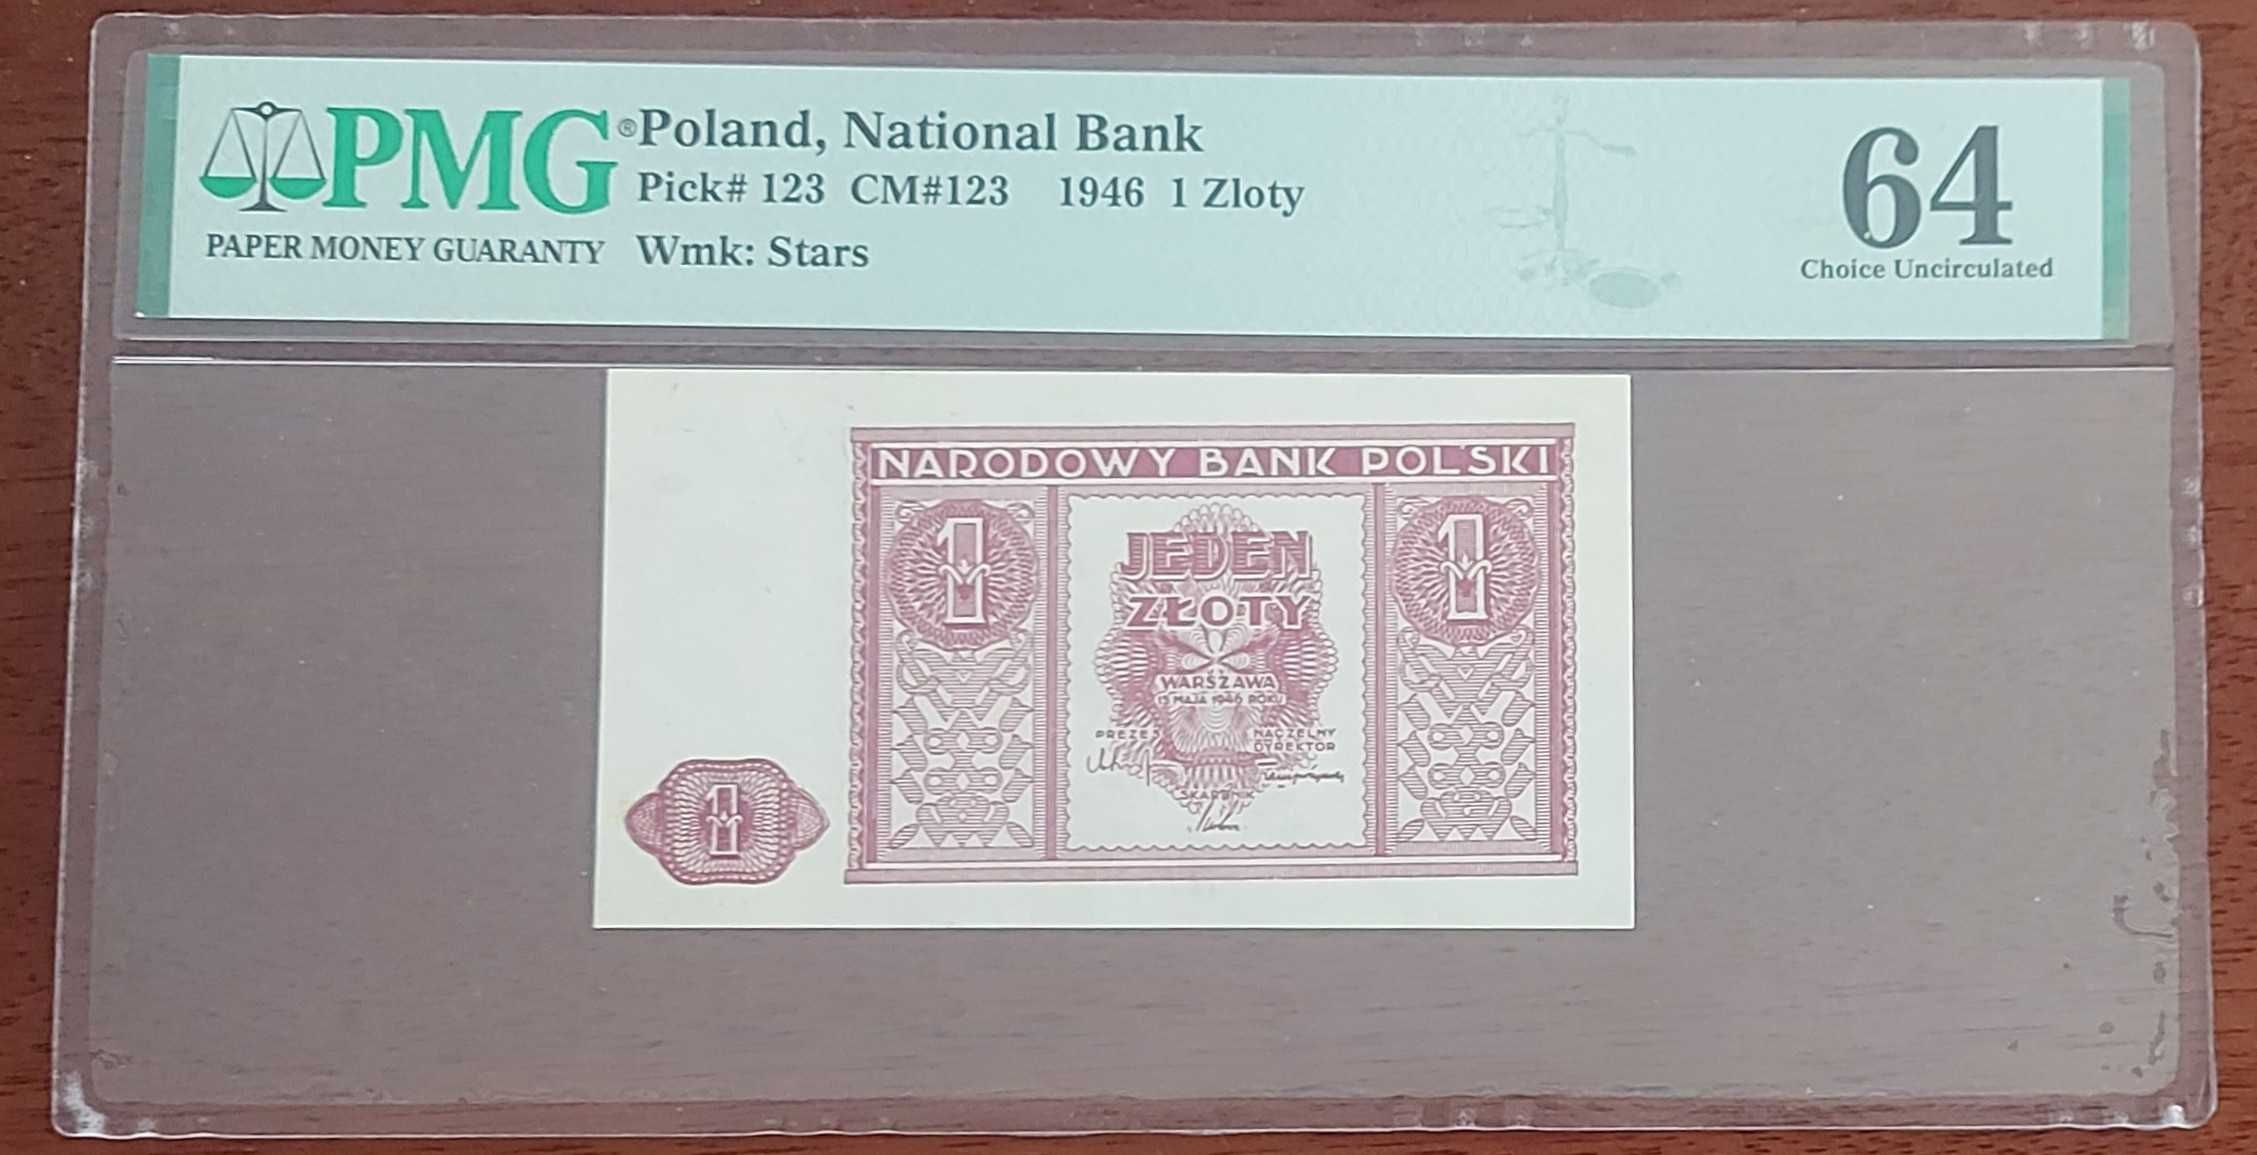 Banknot 1 złoty emisja z 1946 roku